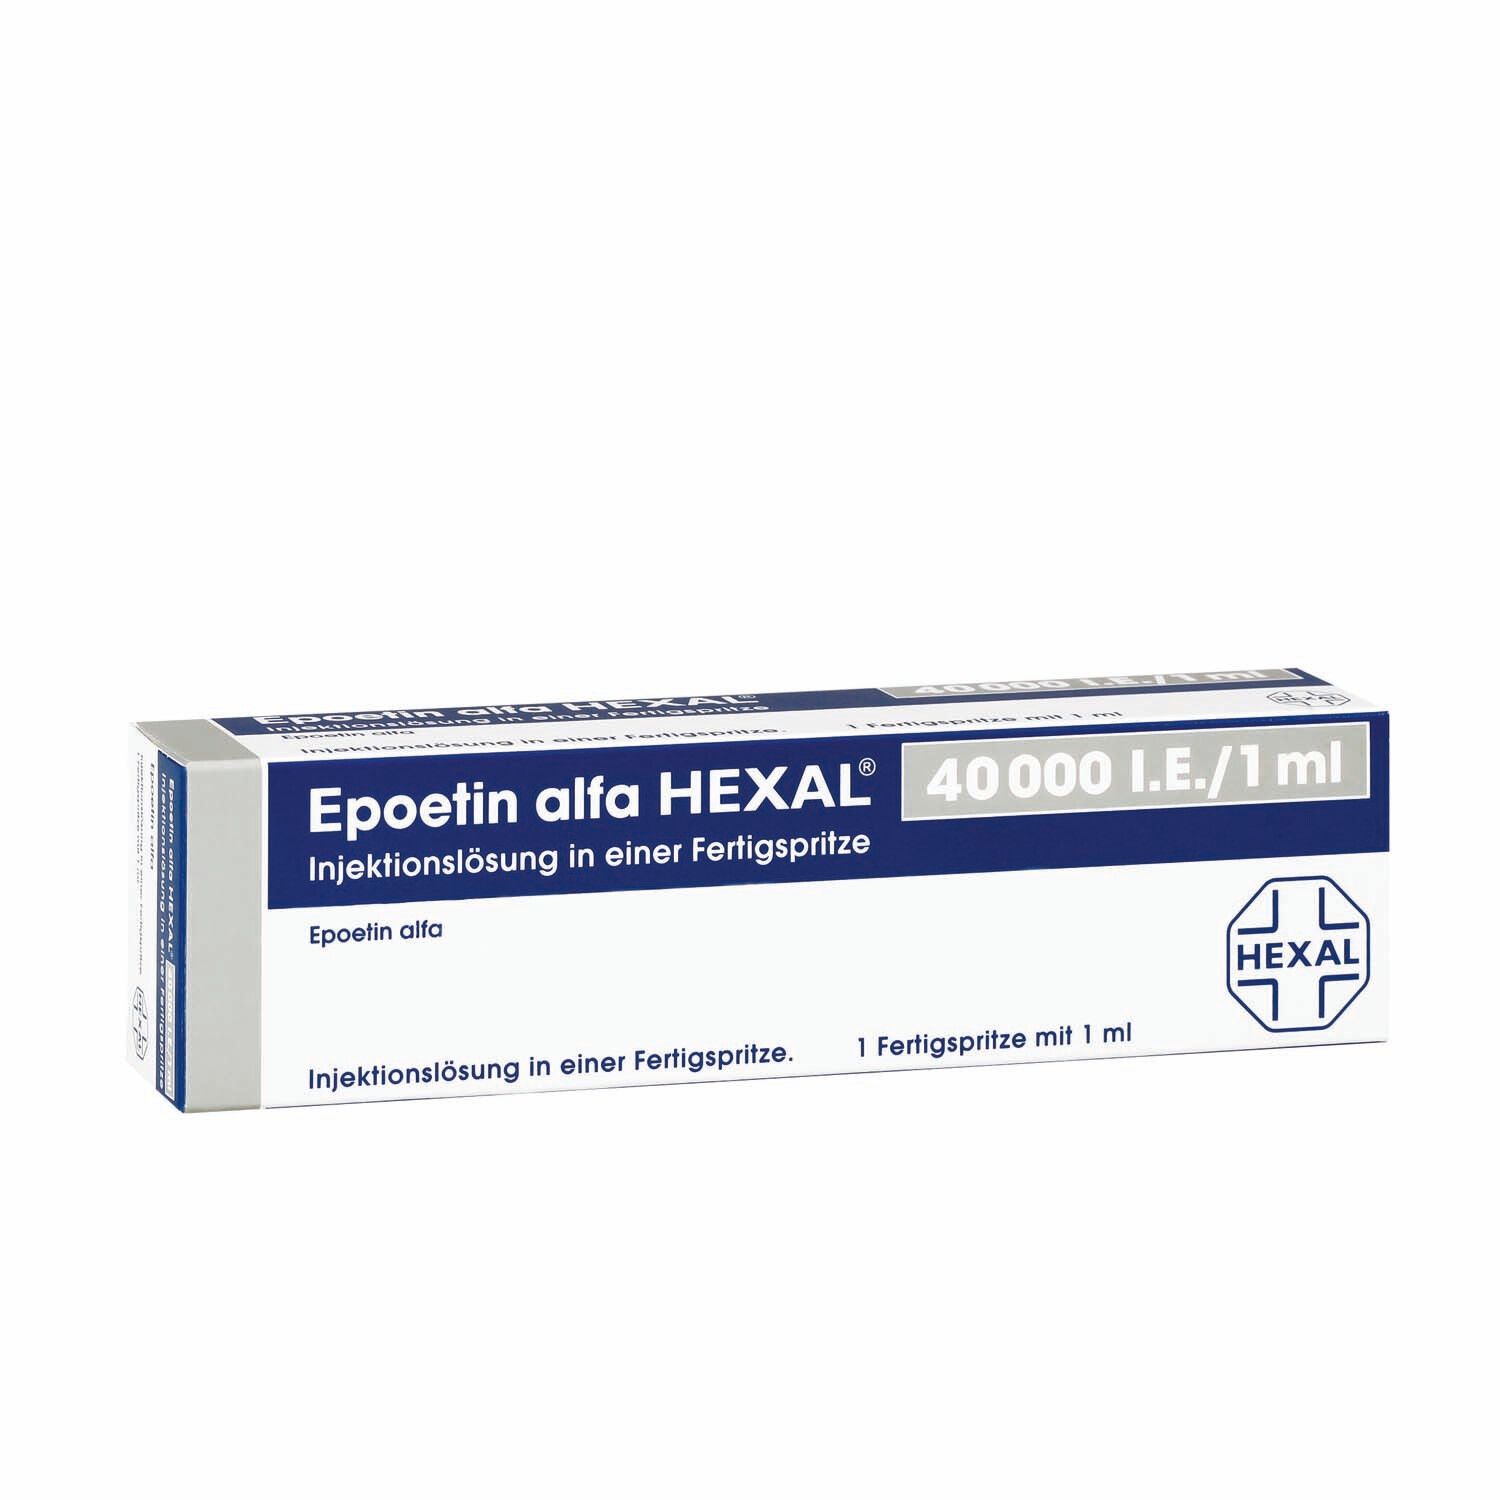 Epoetin alfa HEXAL® 40.000 I.E./1,0 ml